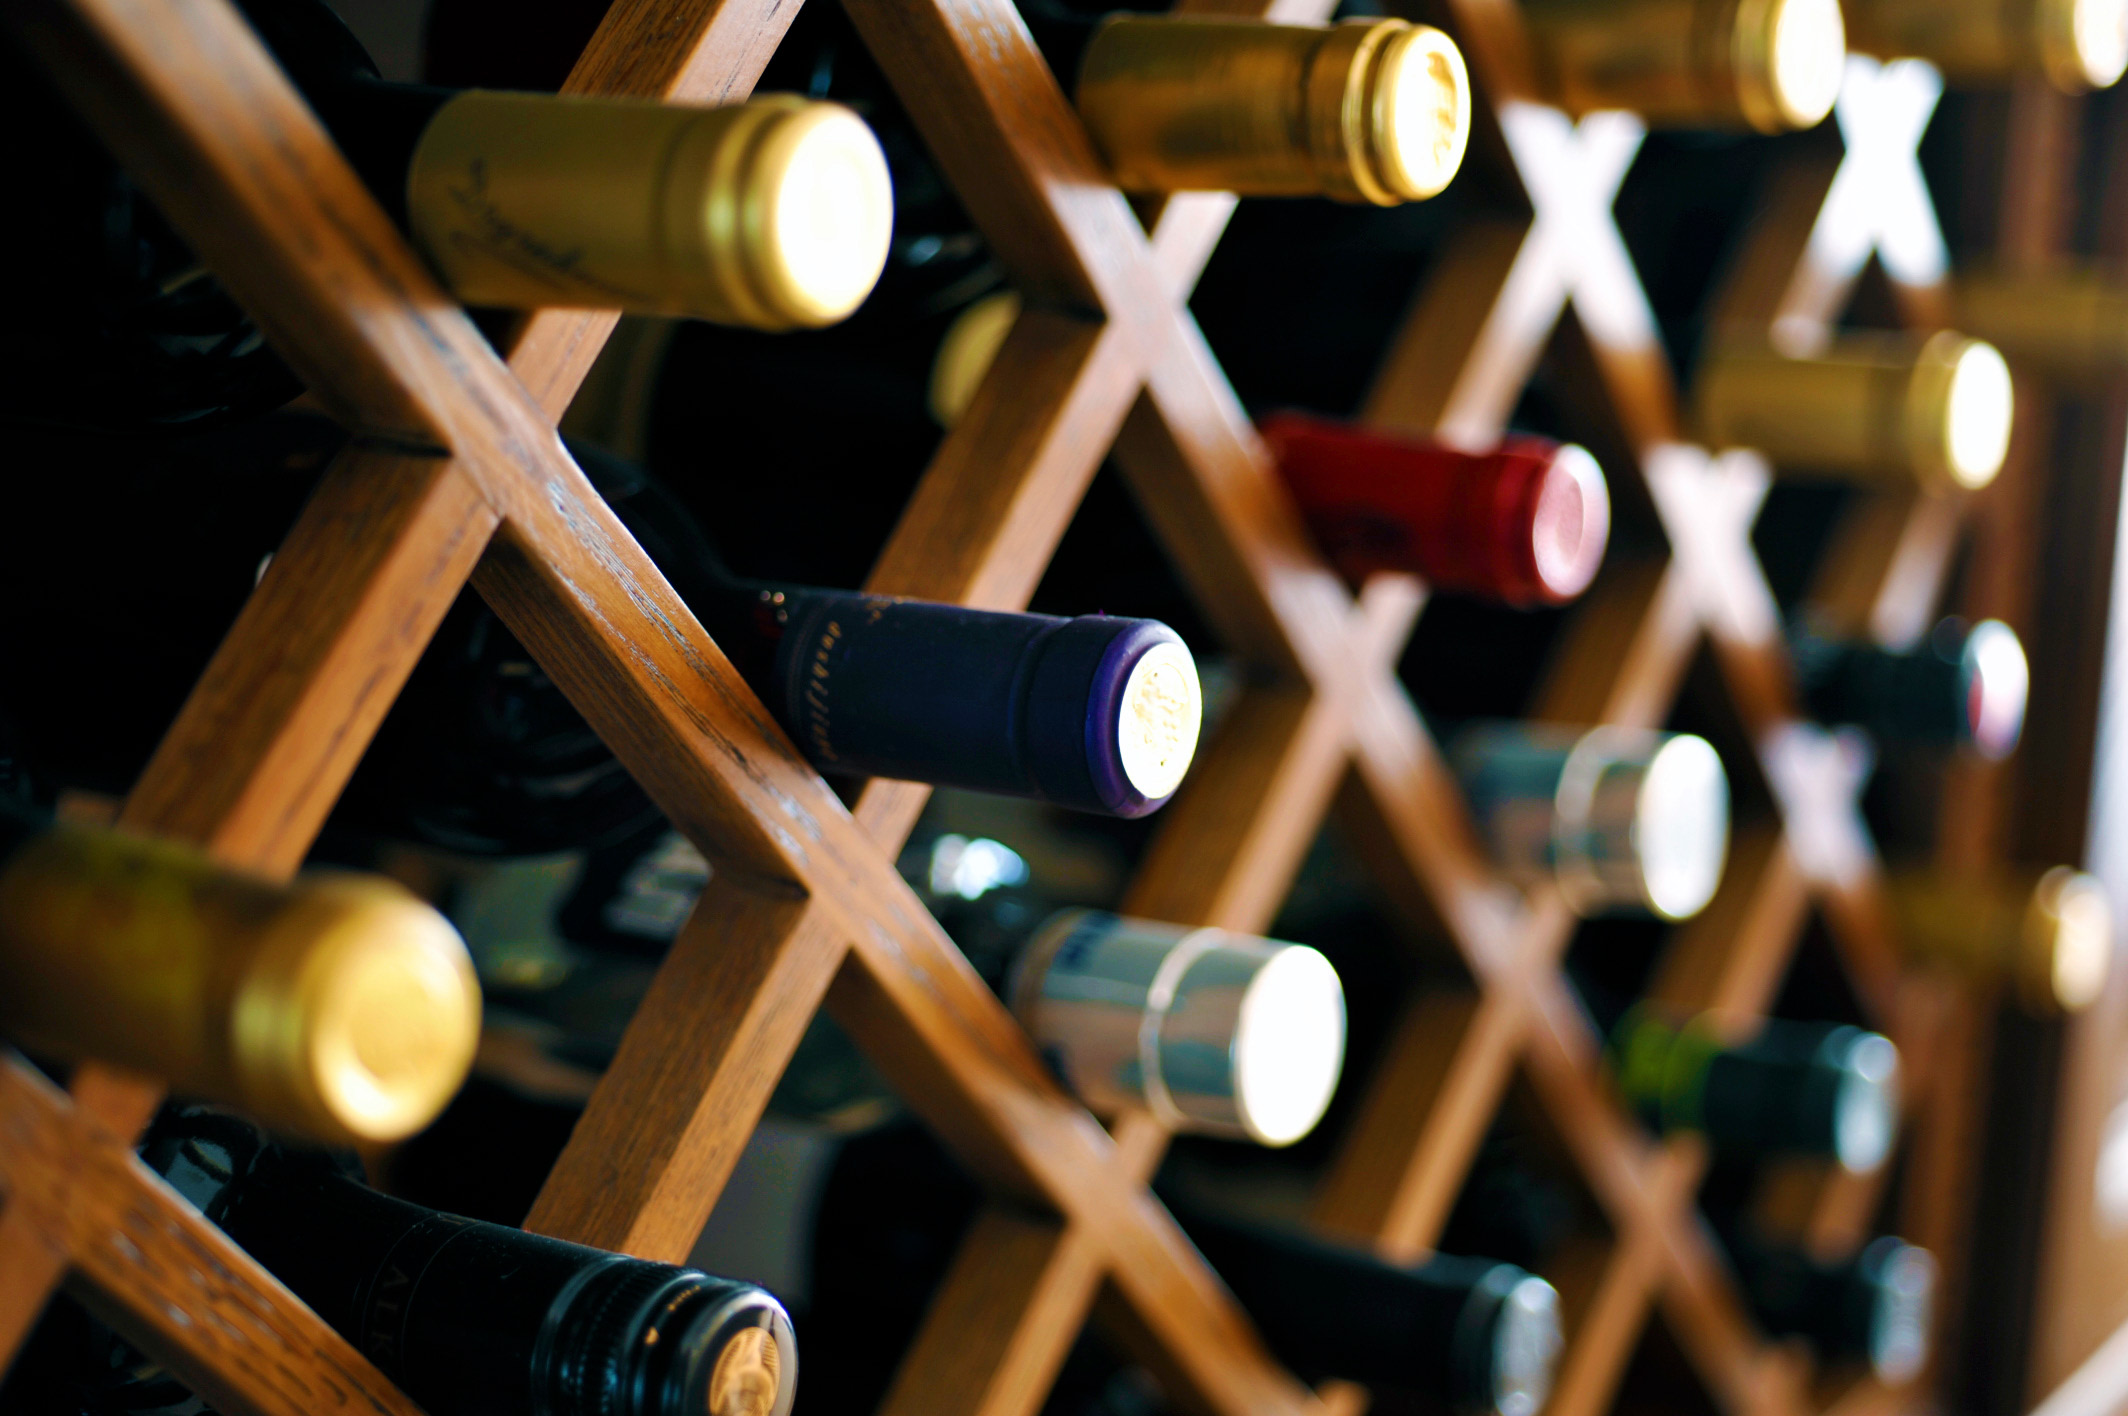 Wine bottles in a wine rack